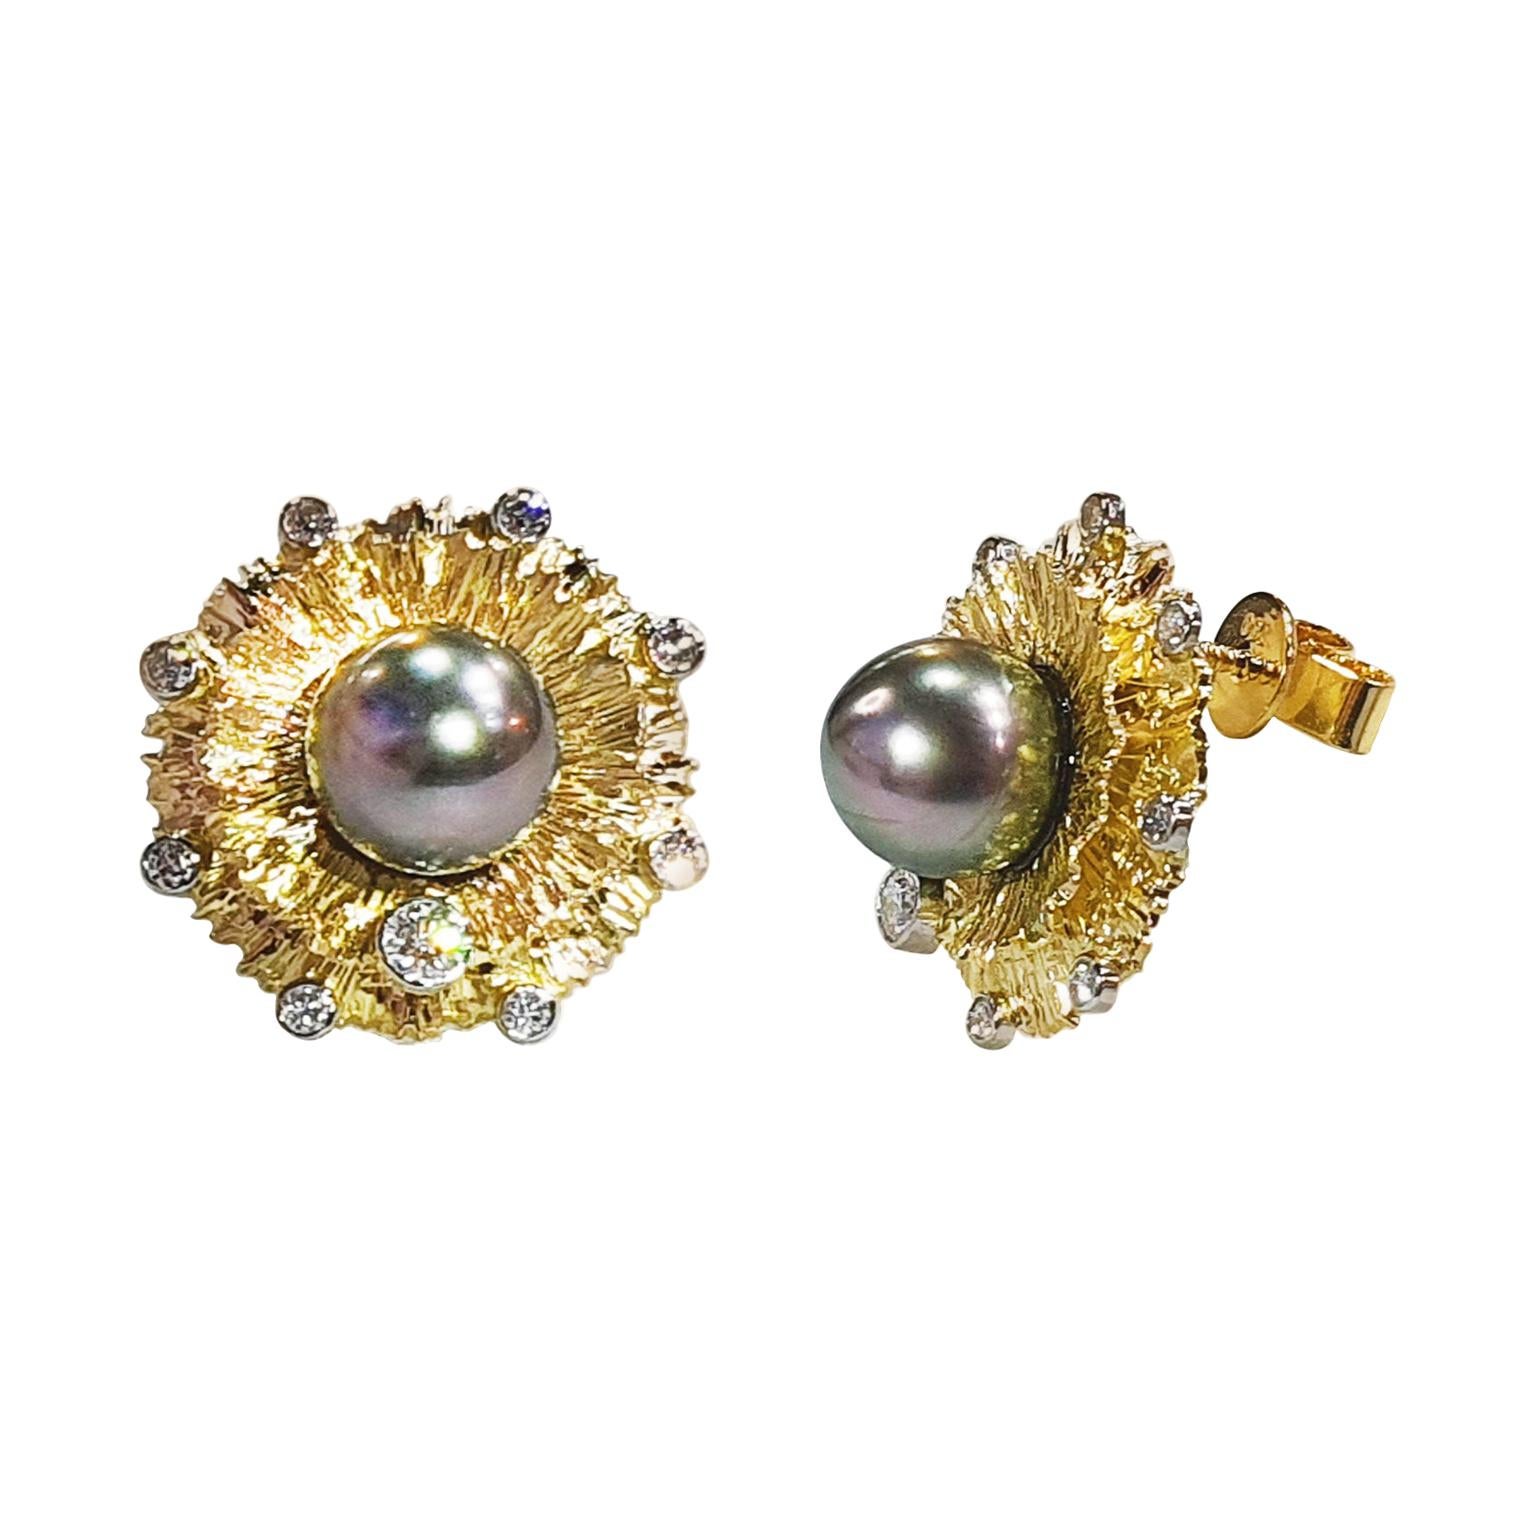 Clous d'oreilles Paul Amey "Carnation" en or 18 carats, diamants et perles noires